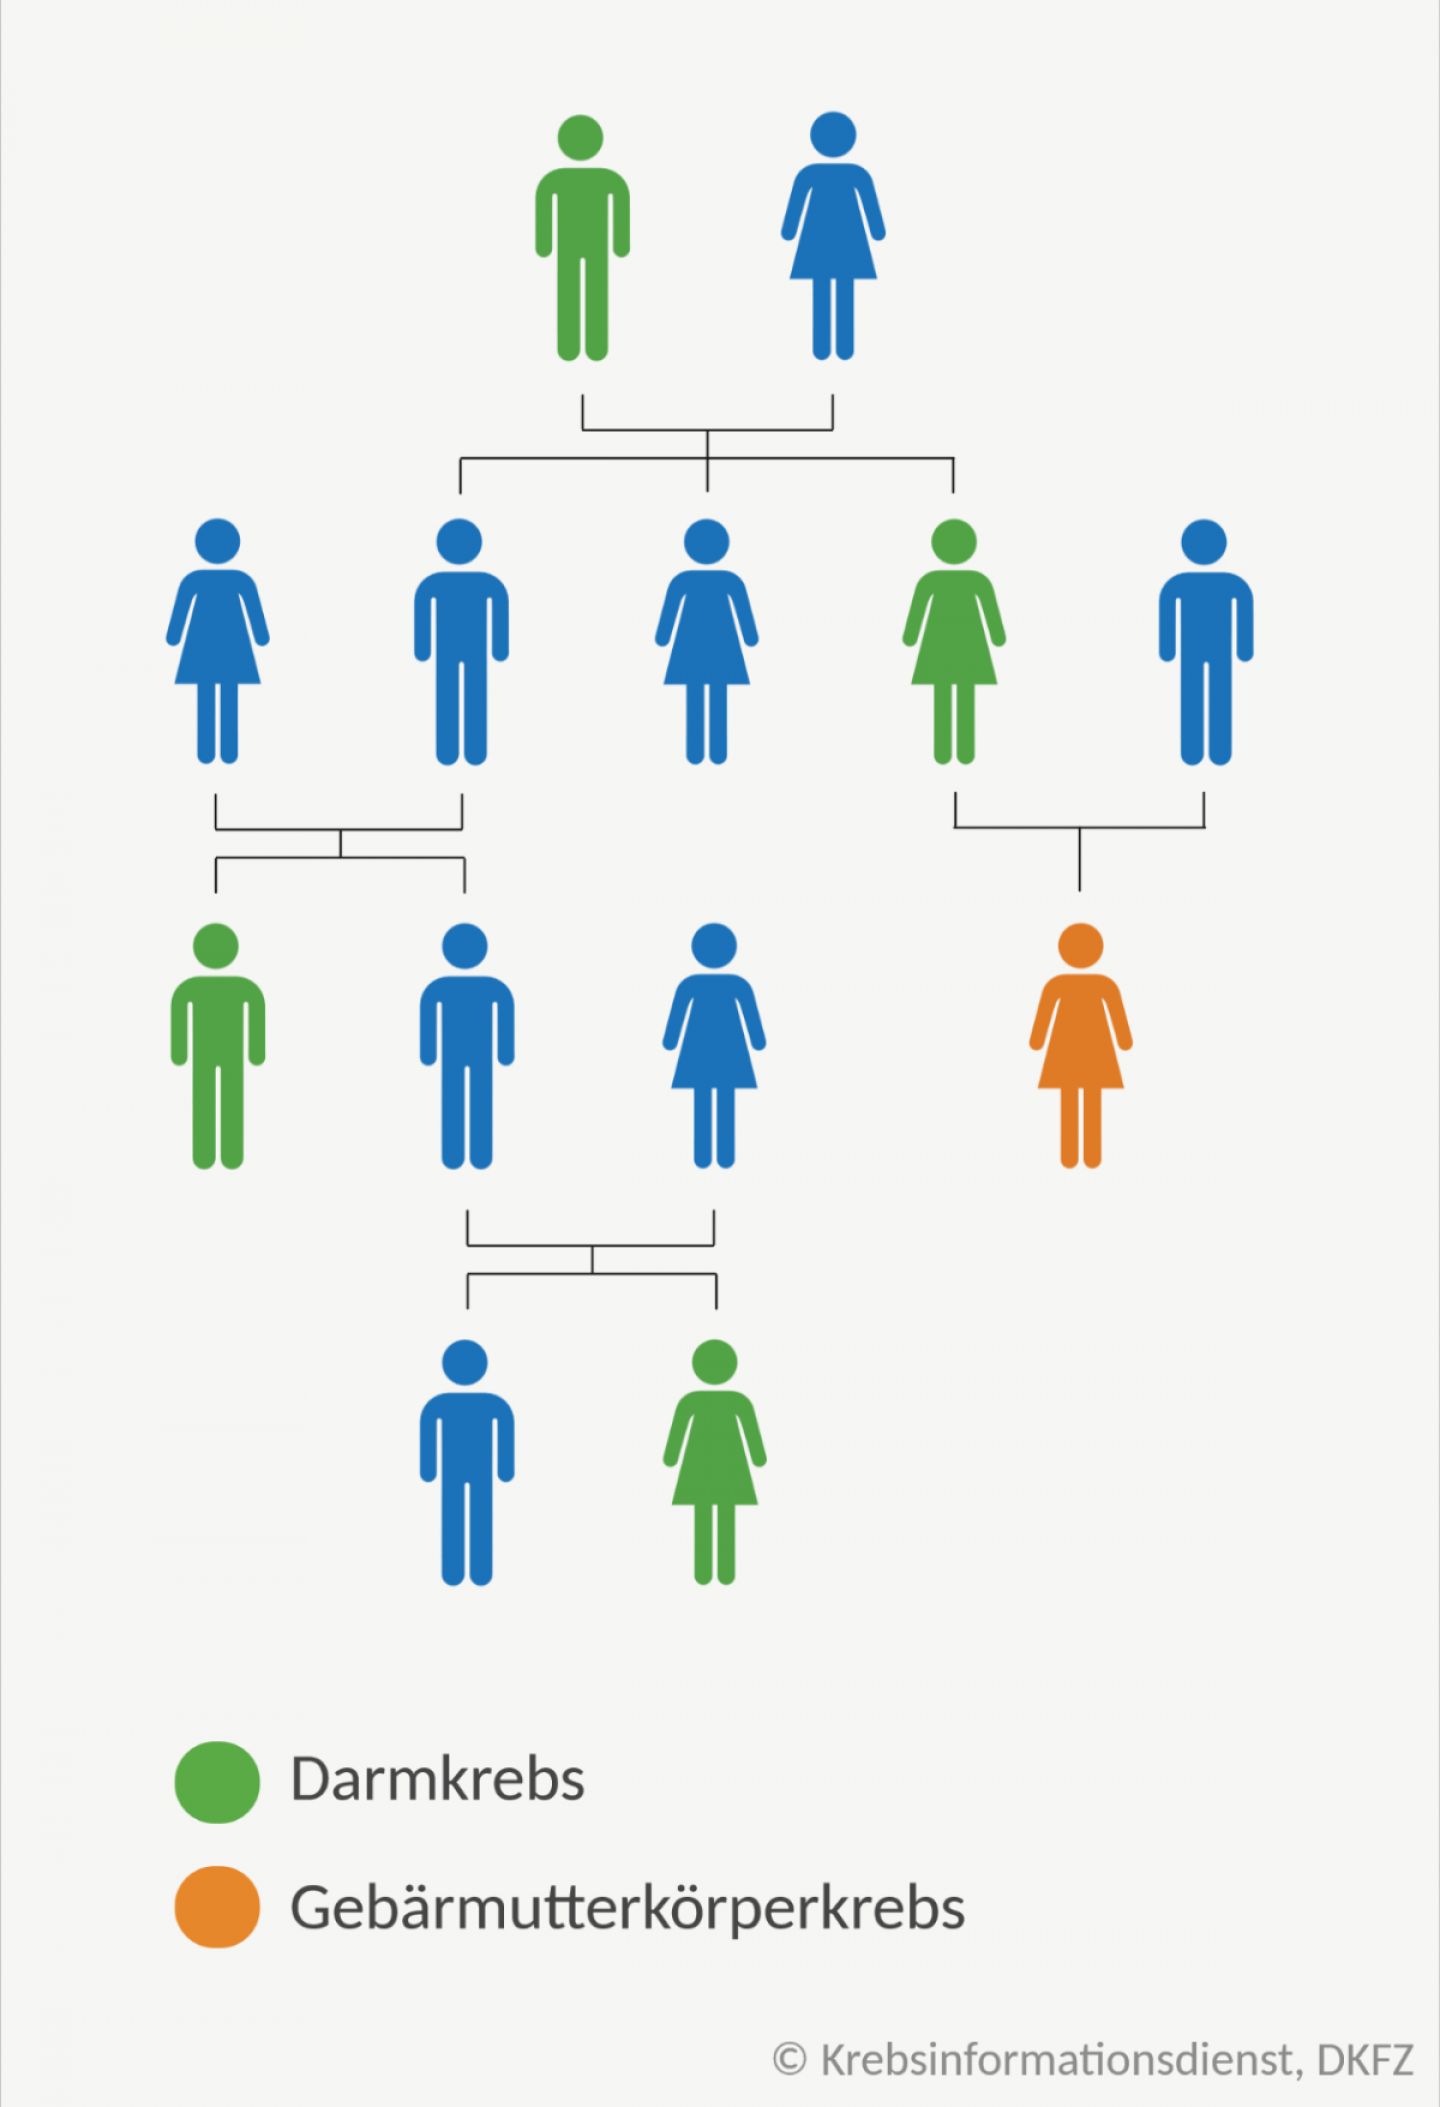 Schematische Abbildung eines Familienstammbaums: Einige Angehörige sind an Darmkrebs oder Gebärmutterkörperkrebs erkrankt.